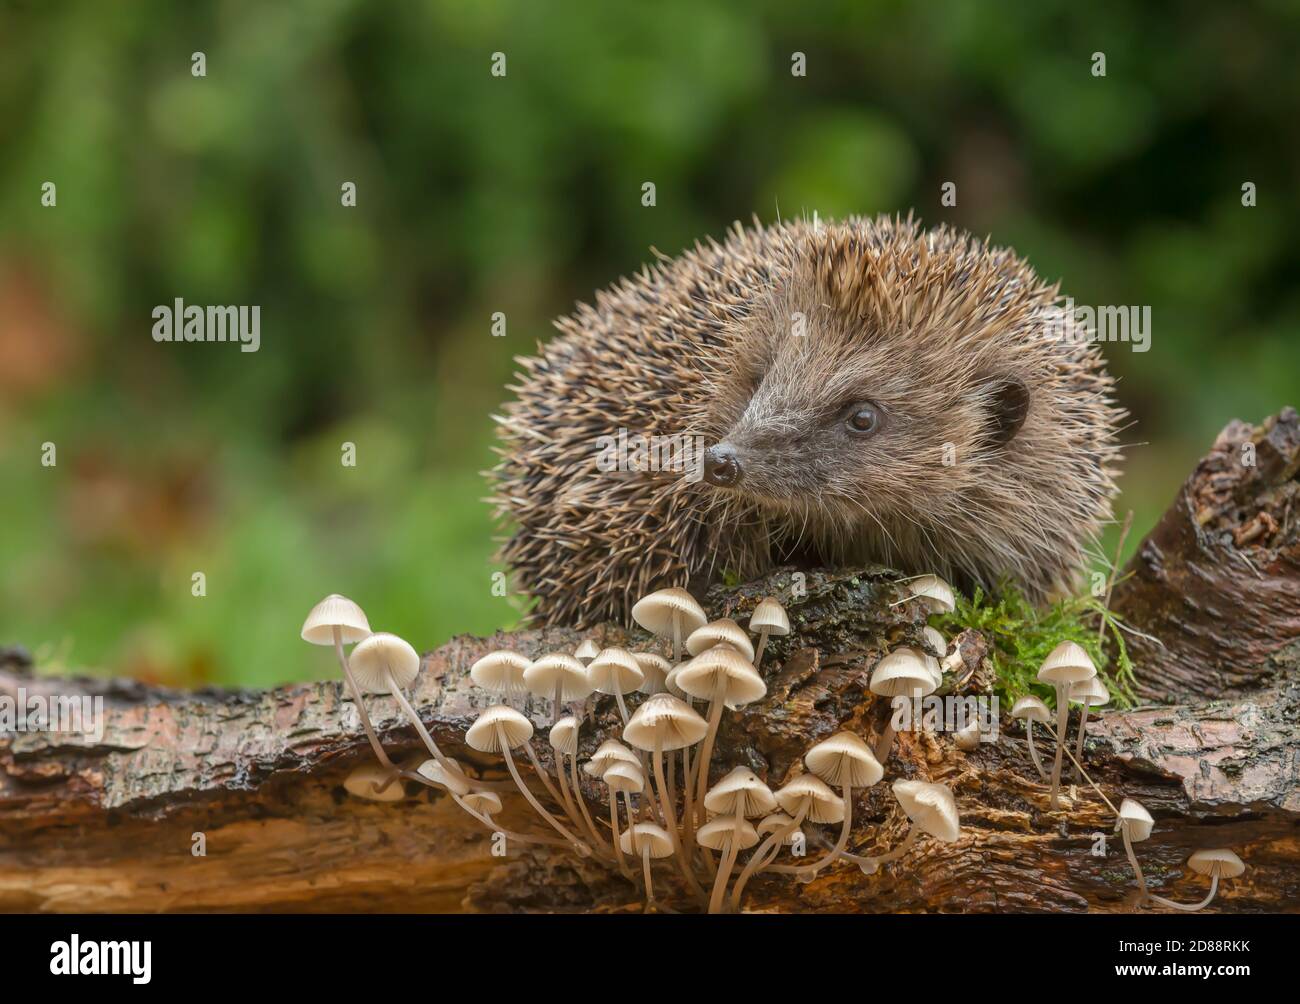 Hedgehog, (Nombre científico: Erinaceus europaeus) Hedgehog salvaje, nativo, europeo forrajeo en un tronco en otoño o otoño con pequeñas heces blancas. Foto de stock